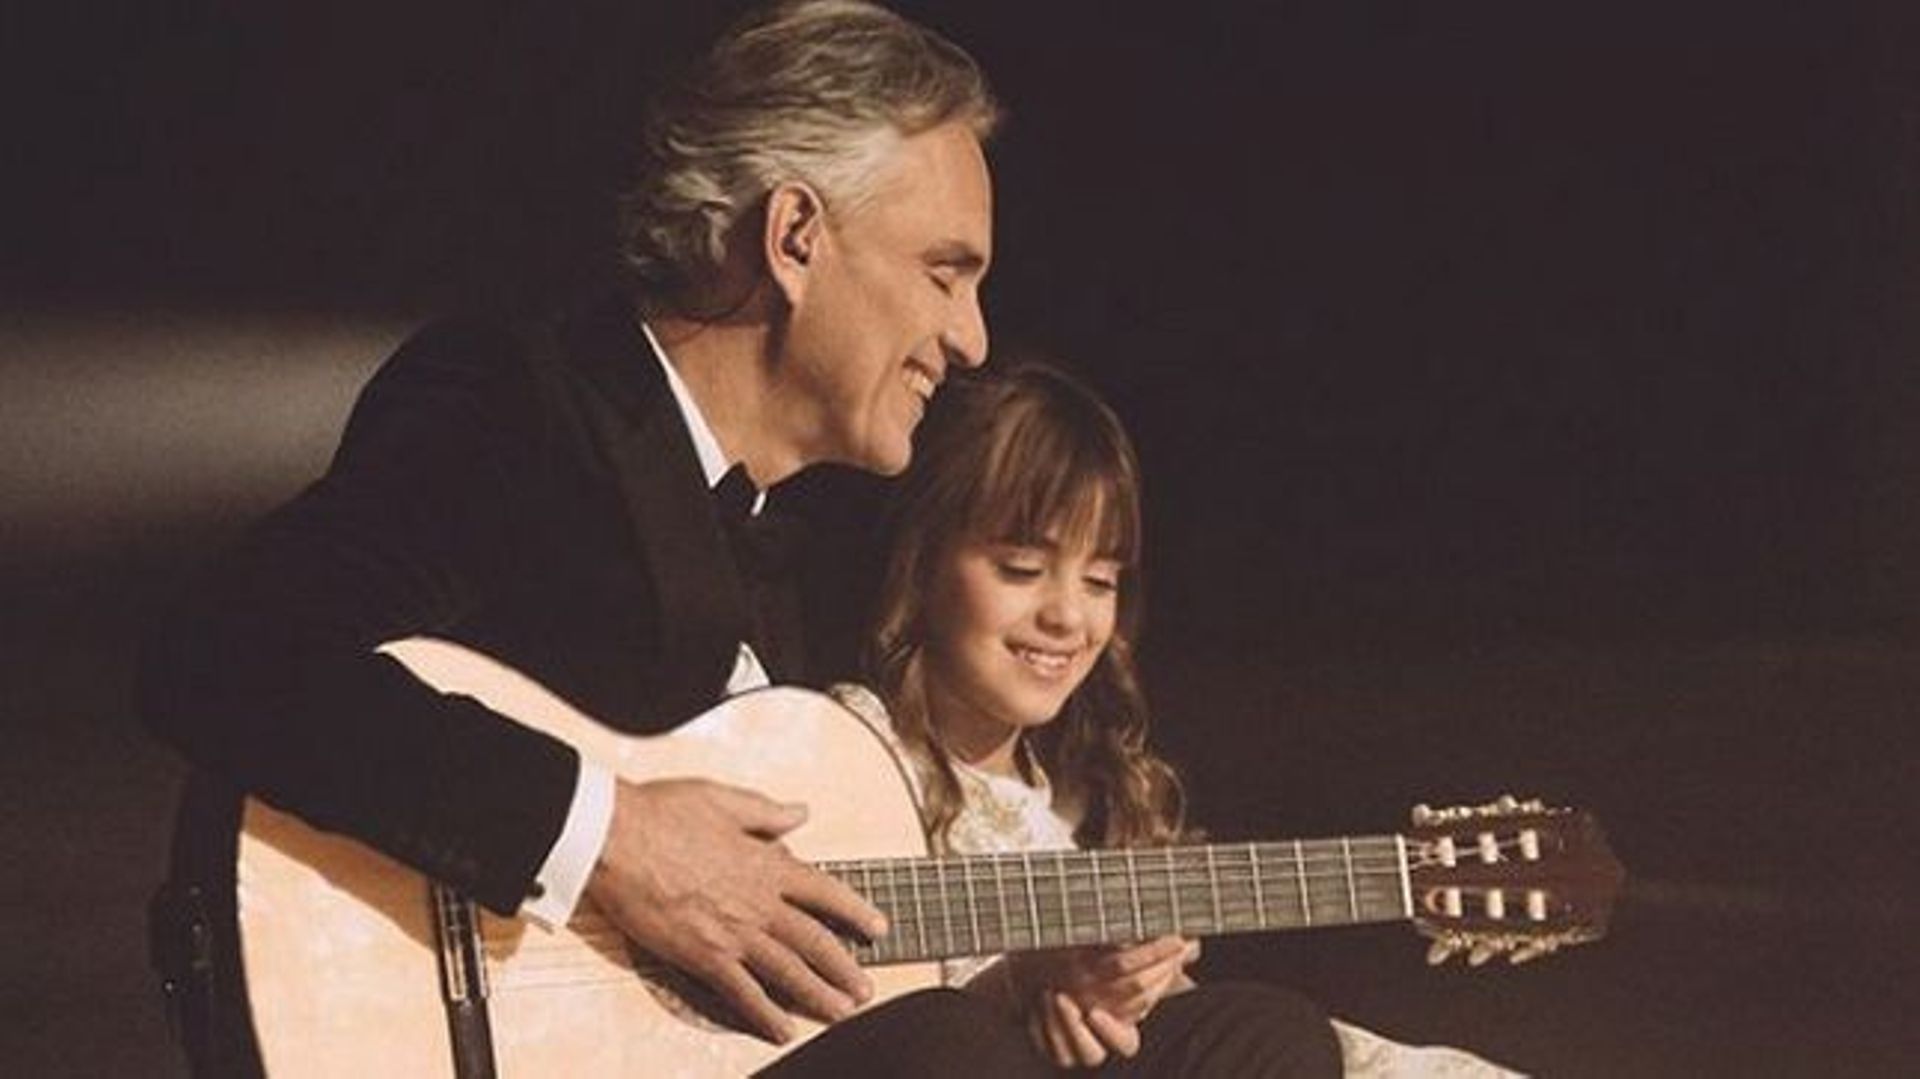 Andrea Bocelli partage un attendrissant duo avec sa fille Virginia